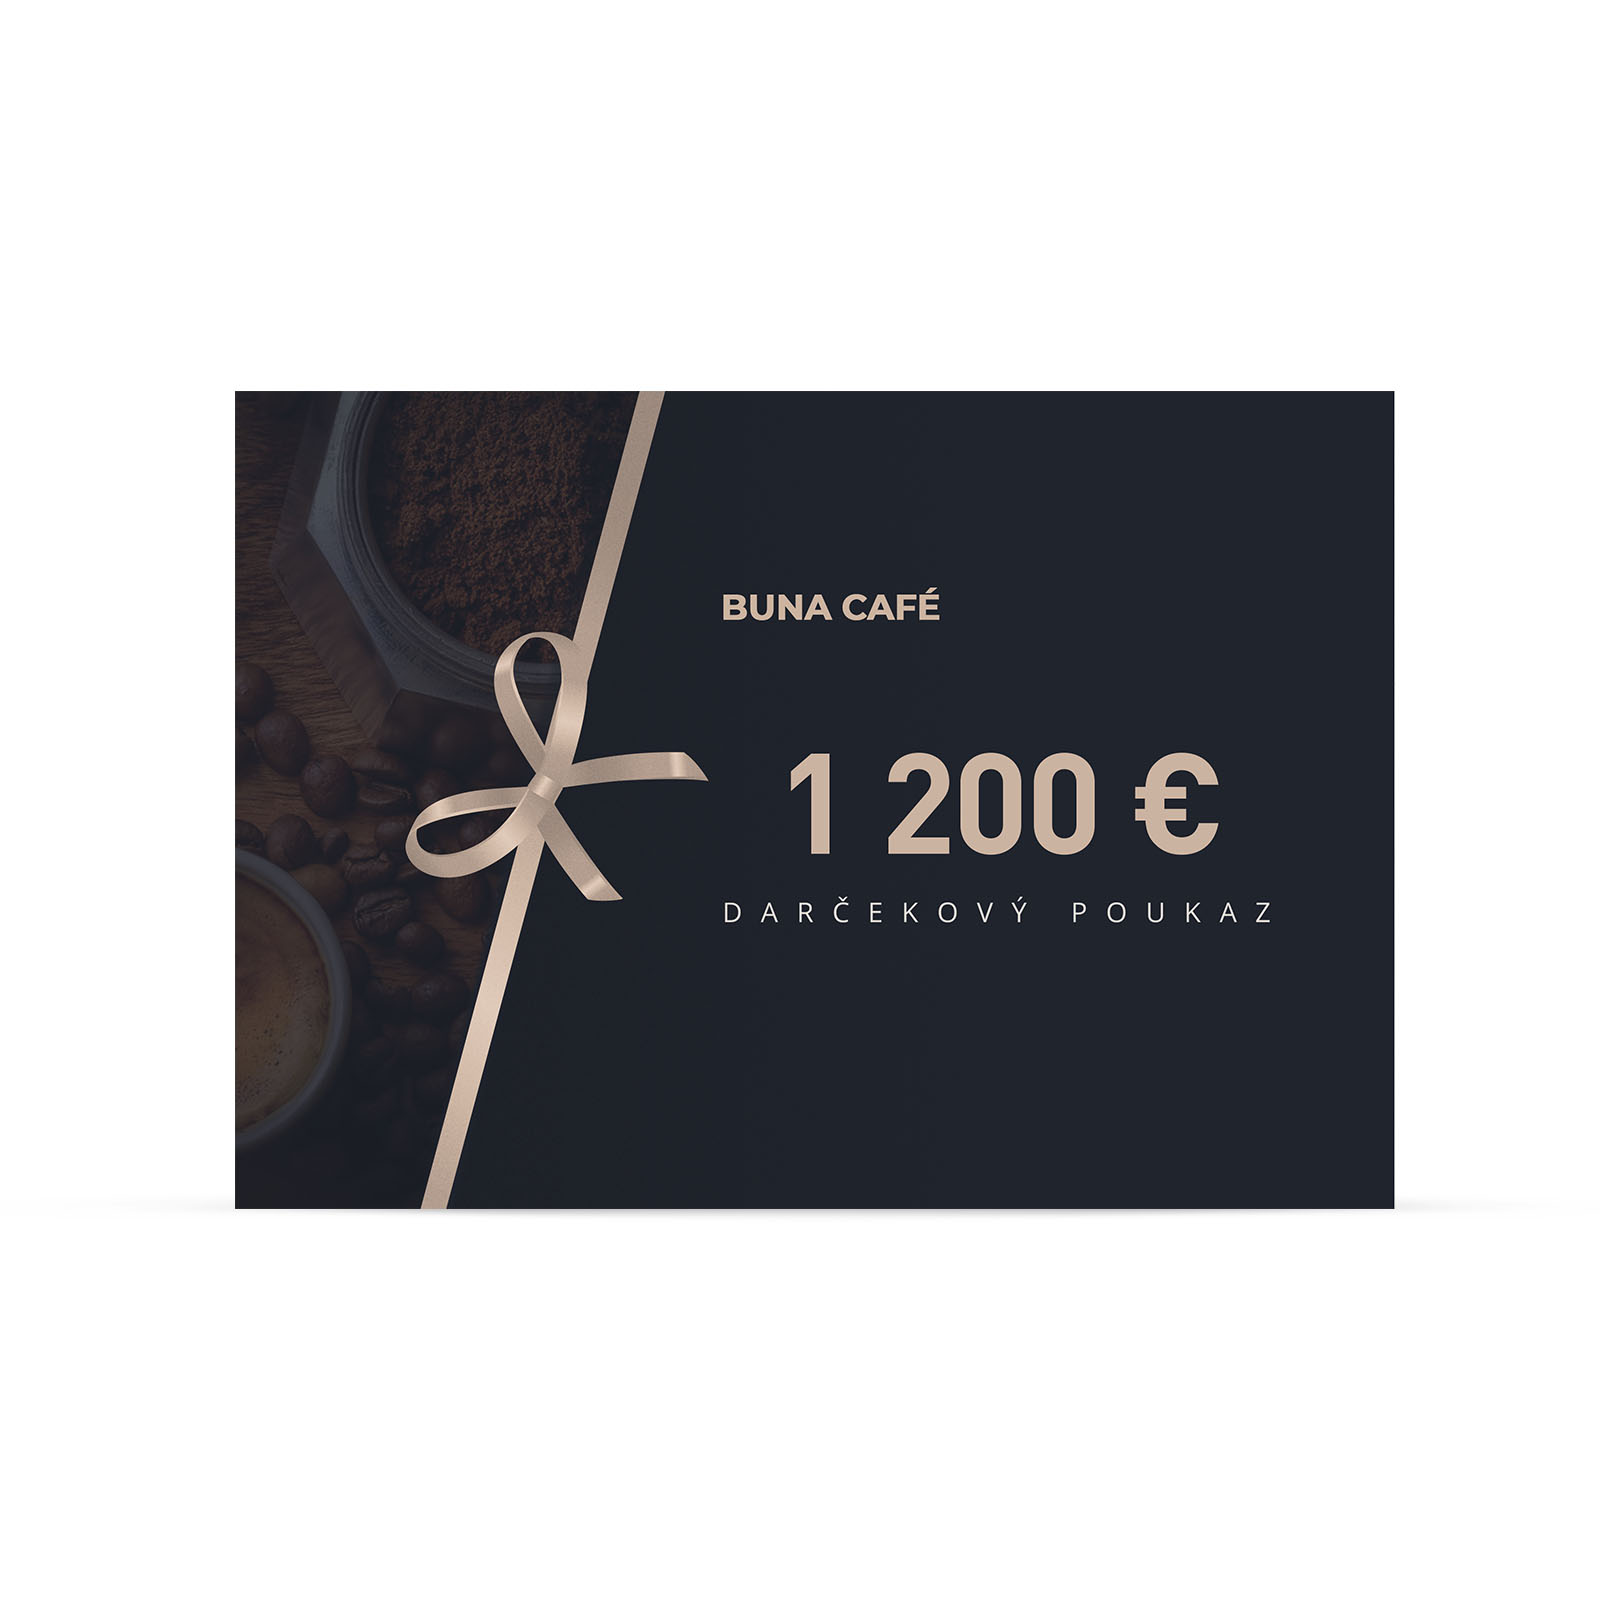 Buna café darčekový poukaz v hodnote 1 200 €